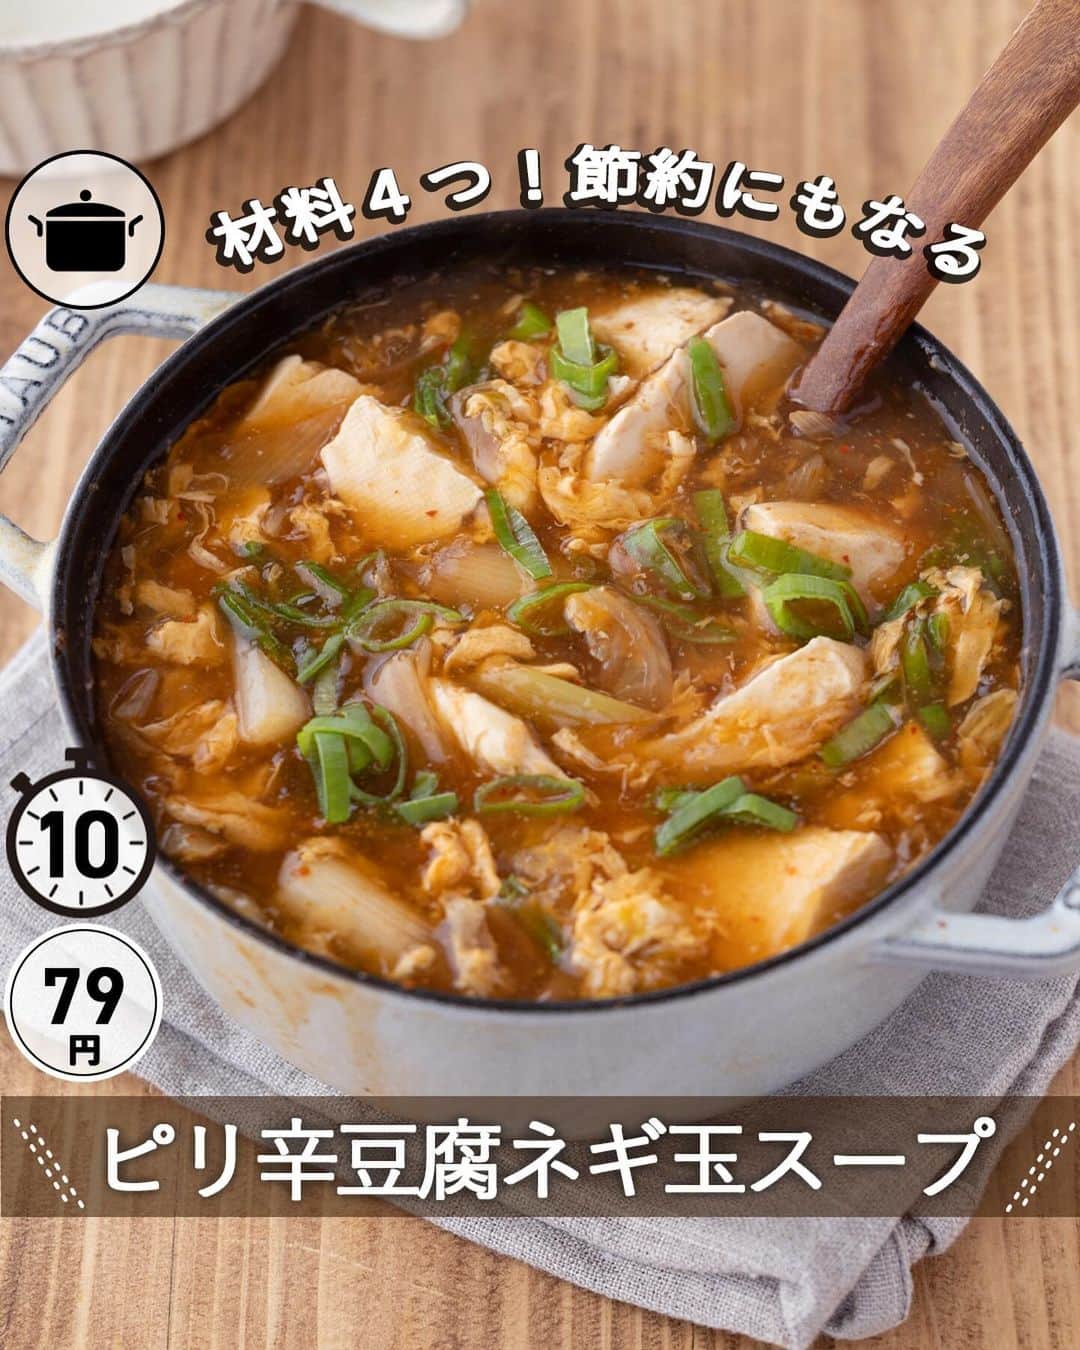 もあいのインスタグラム：「レシピ付き ⋆⸜ ピリ辛豆腐ネギ玉スープ ⸝⋆ 難易度 ✭✩✩ ≀ ◷ 10分 ≀ ¥ 79円/人  コメントでみんなとお話したいです😭💕💕💕 些細なことでもお待ちしてます！  ようこそ٩(^‿^)۶ Ⓜ︎ⓄⒶⒾ🅢ⓀⒾⓉⒸⒽⒺⓃ 𓎩へ こんばんは、もあいです︎ 𓇚  今回は材料４つ。 しかも1人たったの79円で完成する破格な節約スープ。 鍋一つで煮込むだけであっという間にできるレシピをご紹介します！ 寒い冬に体の芯から温めてくれるピリ辛絶品スープ。 炒めたネギとキムチの香ばしい香りが食欲をそそります。 このスープカロリーも低いから、 ダイエットしてる人にもおすすめです！！  【キムチ】 ​​辛味の成分は唐辛子に含まれるカプサイシン！ エネルギー代謝を促進する働きがあり、血行促進や発汗を促してくれます。 唐辛子を食べて代謝が上がっている状態で運動をすることで脂肪を効率的に燃焼することができ、ダイエット効果が期待できます！  では、いってみよう ☞  —-✄———-✄———-✄—- ✍︎ recipe  ✿材料(2人分)  ・長ネギ...1本 ・豆腐…150g ・卵…1個 ・キムチ…60g A水…700ml A鶏がらスープの素…大1 A醤油…小2 ・水溶き片栗粉…適量 ・ごま油…大1  ✿作り方  ①長ネギの白い部分は斜め薄切りにする。  ②鍋にごま油を中火で熱し、 　長ネギ、キムチを入れて炒める。 ※ネギに焼き色がつくまで  ③鍋にAを入れ、豆腐をスプーンで 　すくいながら加える。 　沸々したら火を弱めて水溶き片栗粉を 　混ぜながら加えとろみを付ける。  ④溶き卵を流し入れて完成。 　追いでキムチを乗せたり、 　白ネギの青い部分を乗せたり 　お好みで楽しんでください！  #OL仕事めし #働楽ごはん #モアイズキッチン ♔∴∵∴♔∴∵∴♔∴∵∴♔∴∵∴♔∴∵∴♔∴∵∴♔  #スープ #中華スープ #豆腐 #卵 #手作りごはん #簡単レシピ #レシピ #節約 #家庭料理 #自炊 #節約ごはん #管理栄養士 #時短料理 #おうちごはん」